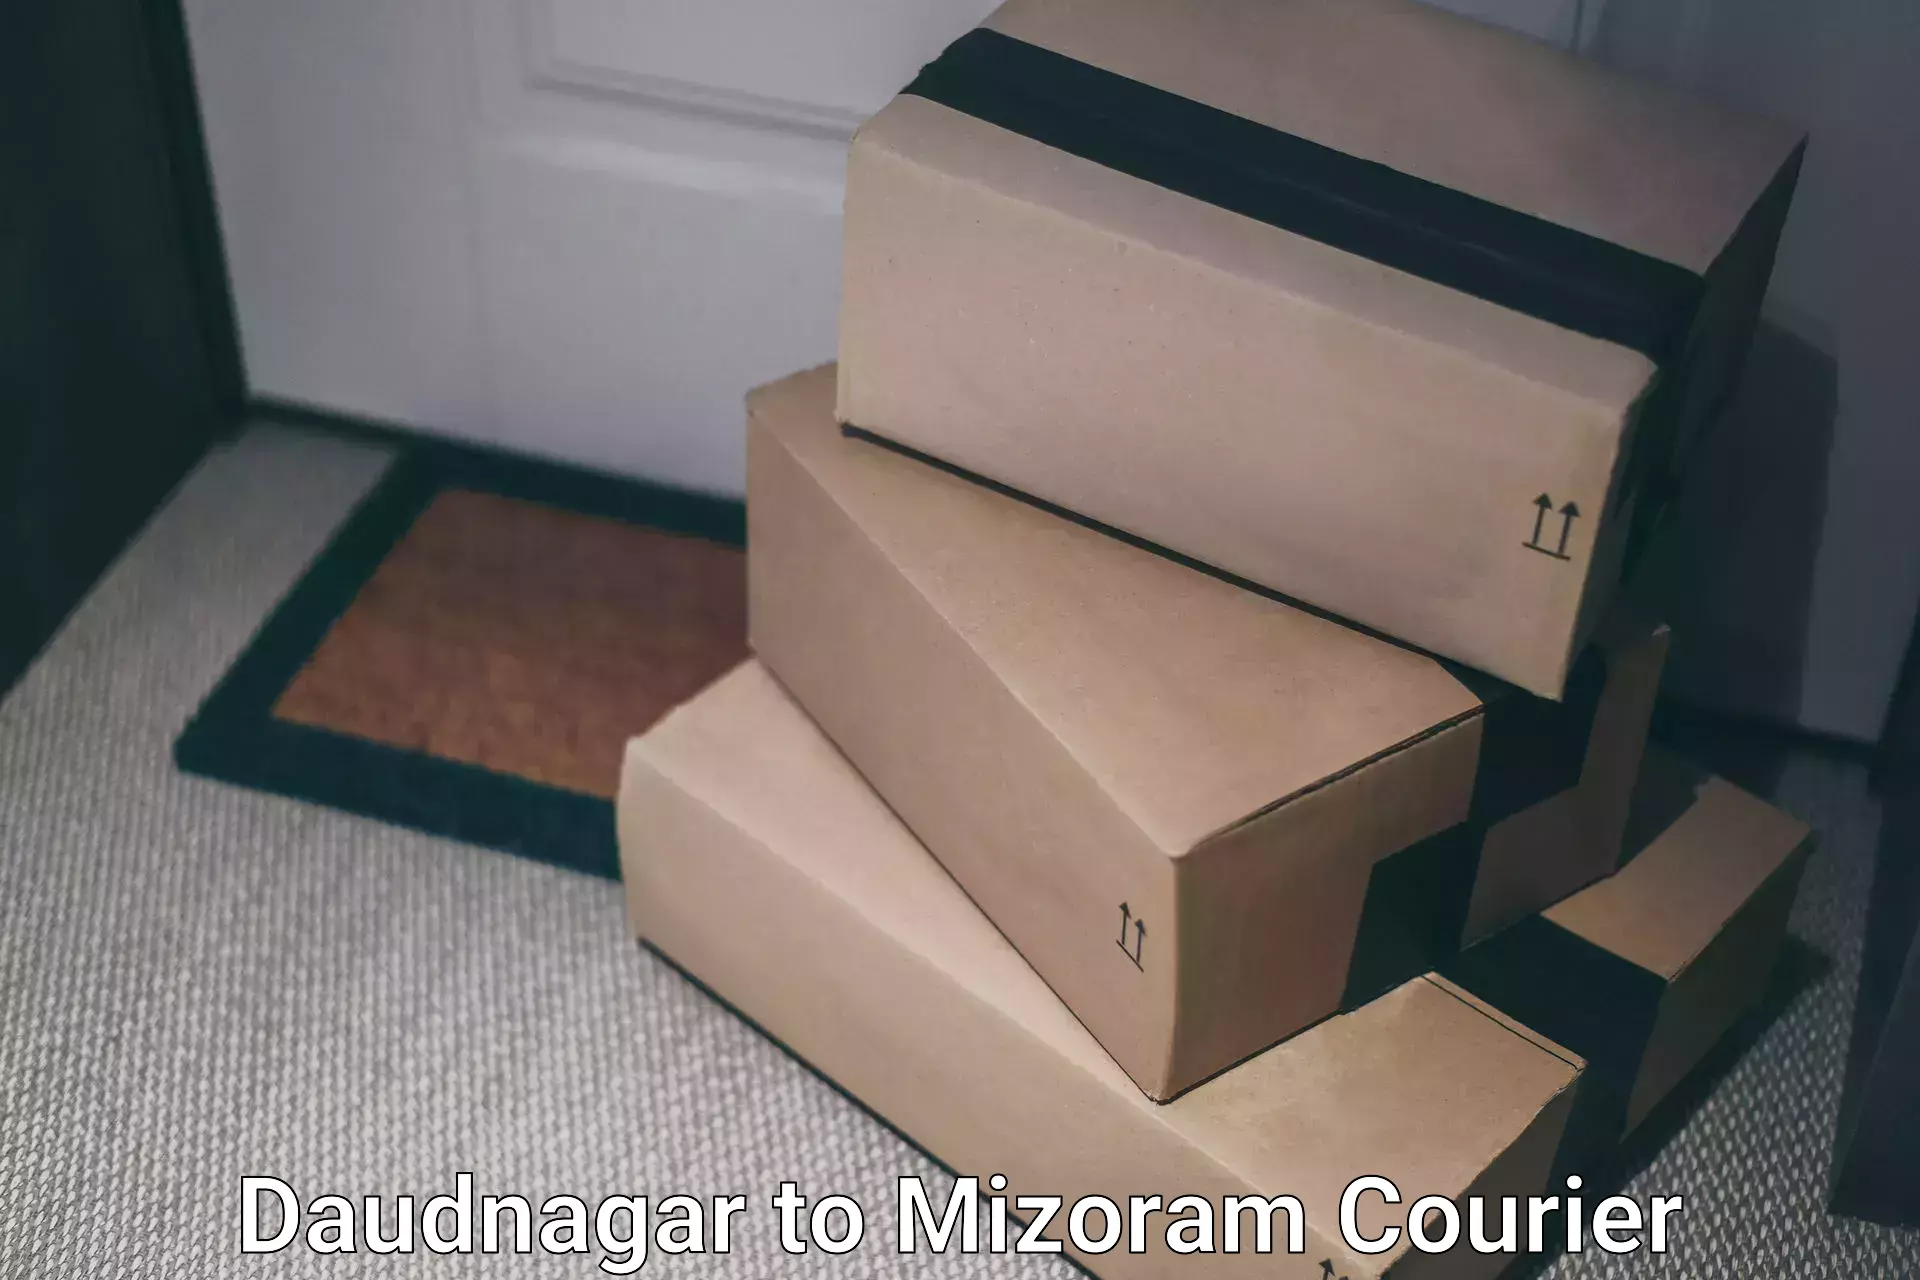 Professional courier services Daudnagar to Mizoram University Aizawl